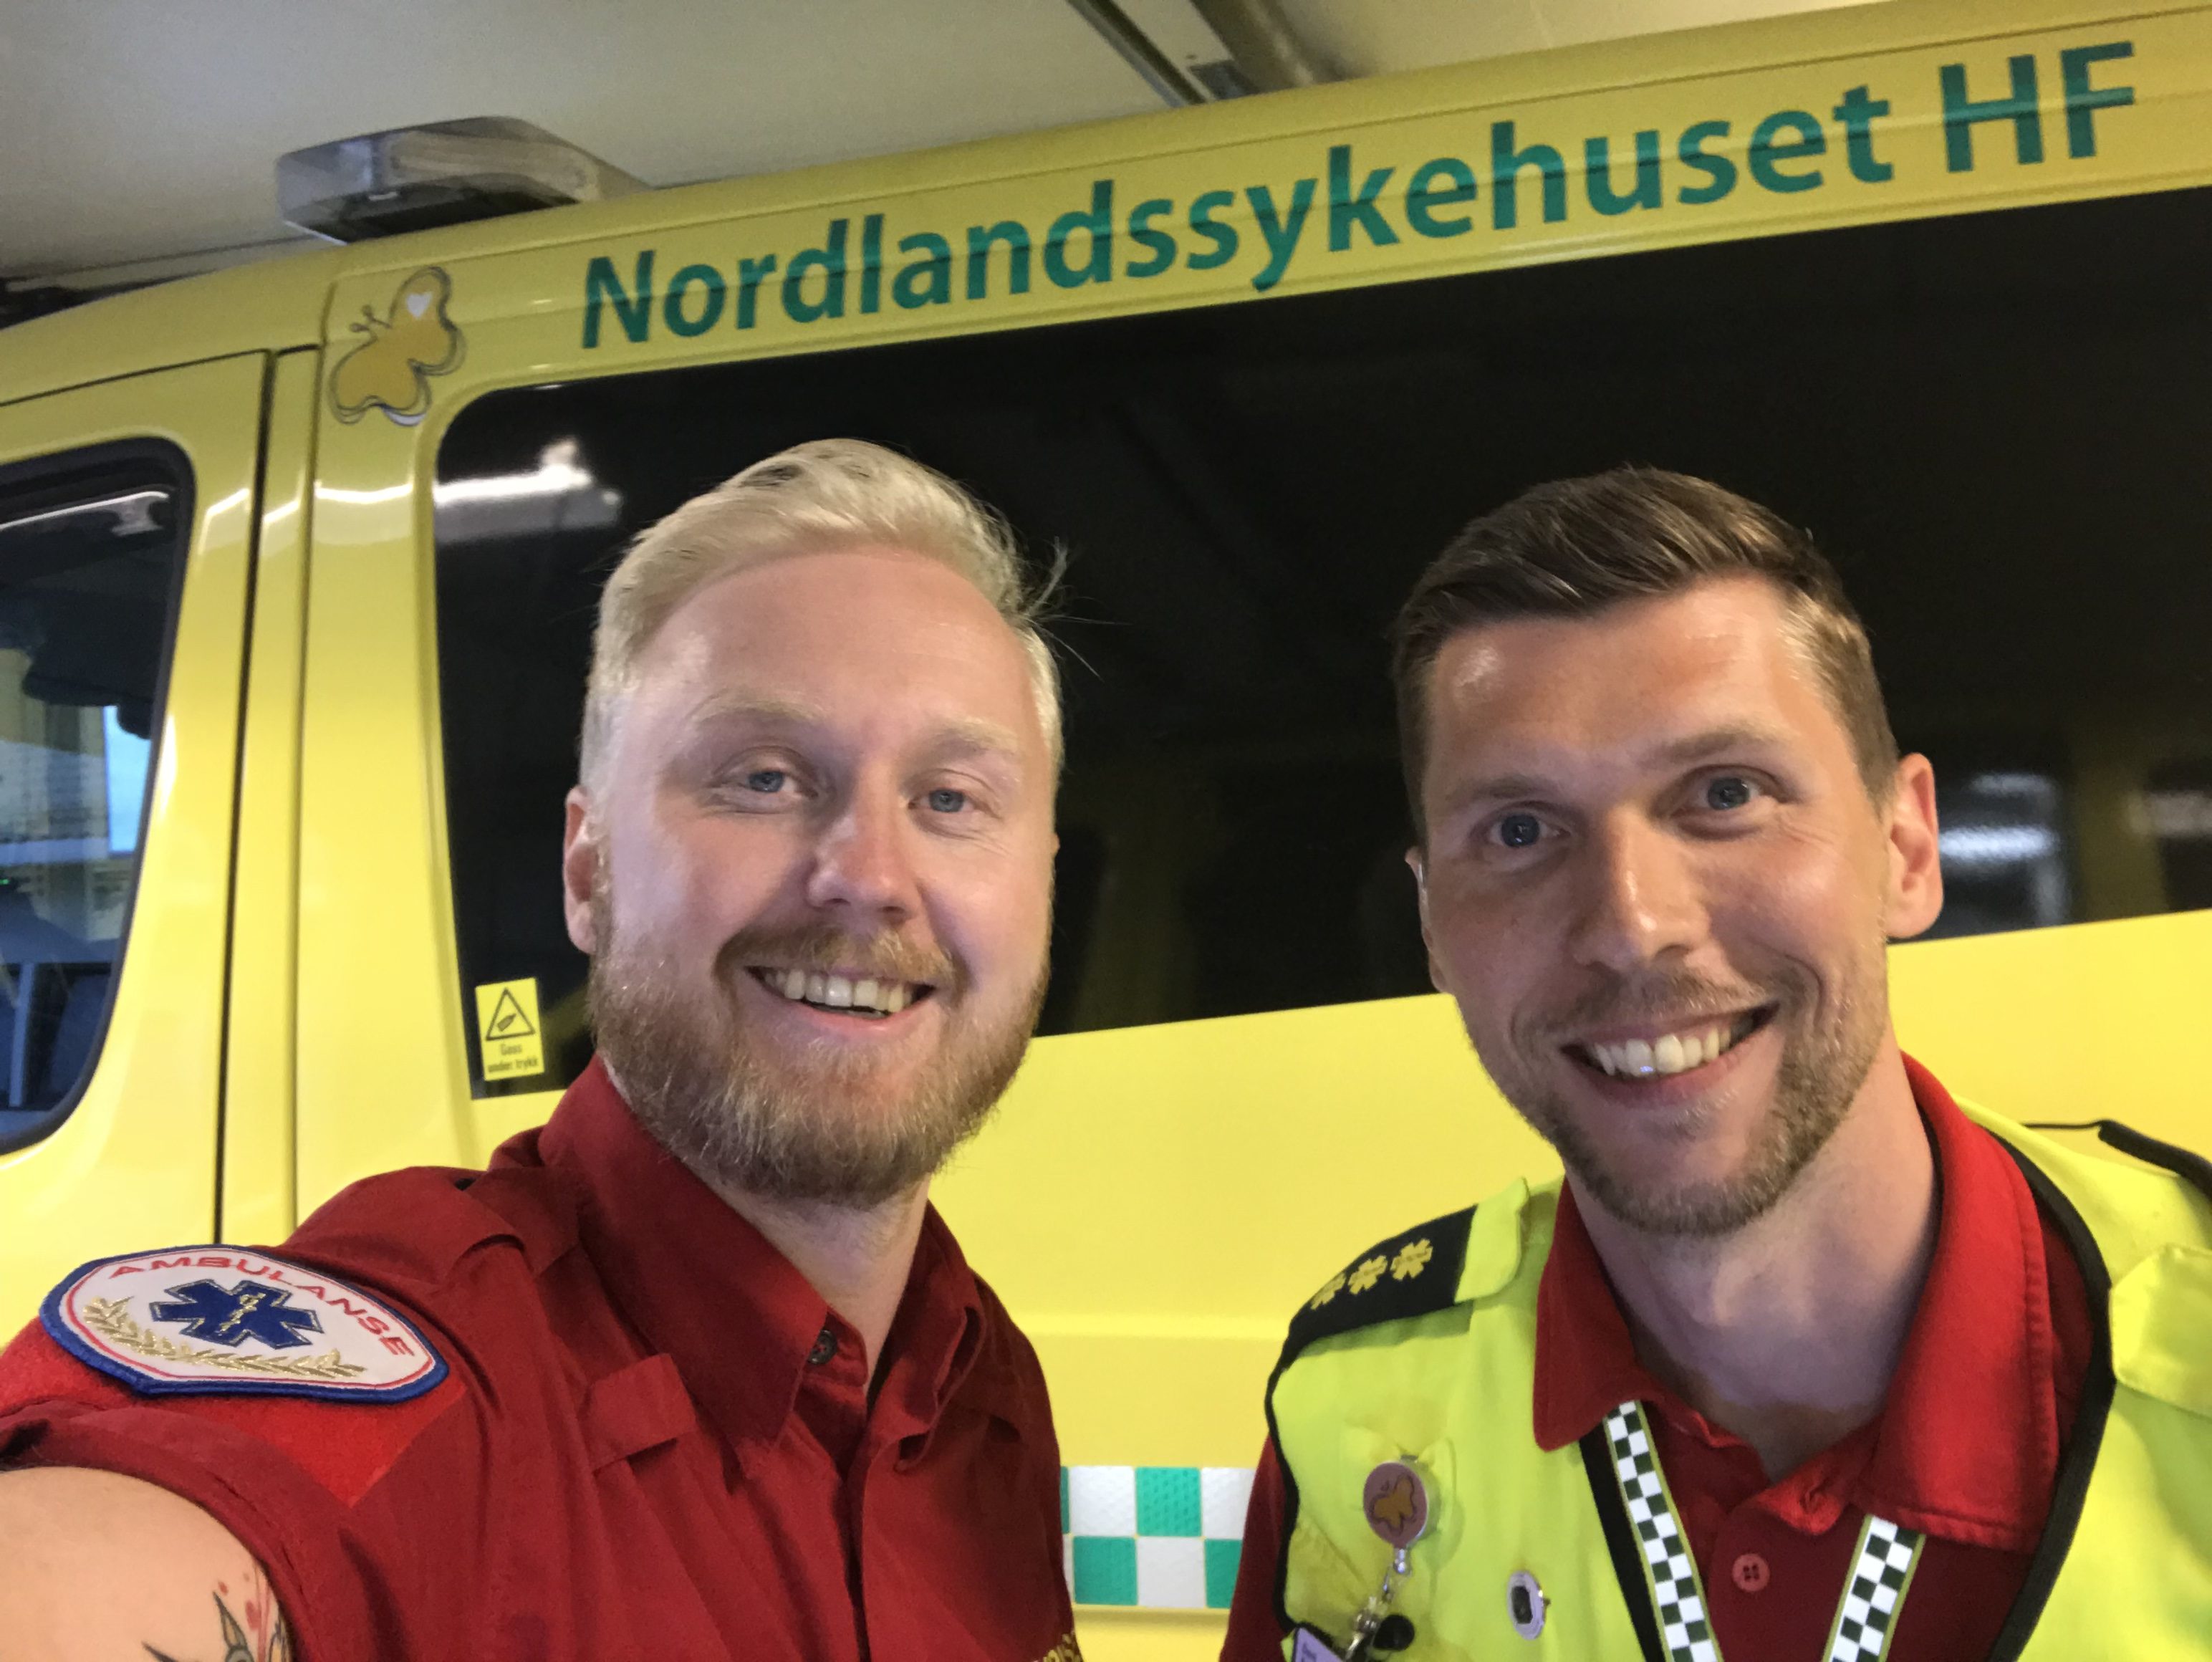 Dani Karlsen, NLSHs ambulansetjeneste til høyre. Foto: Ole Kristian Andreassen.